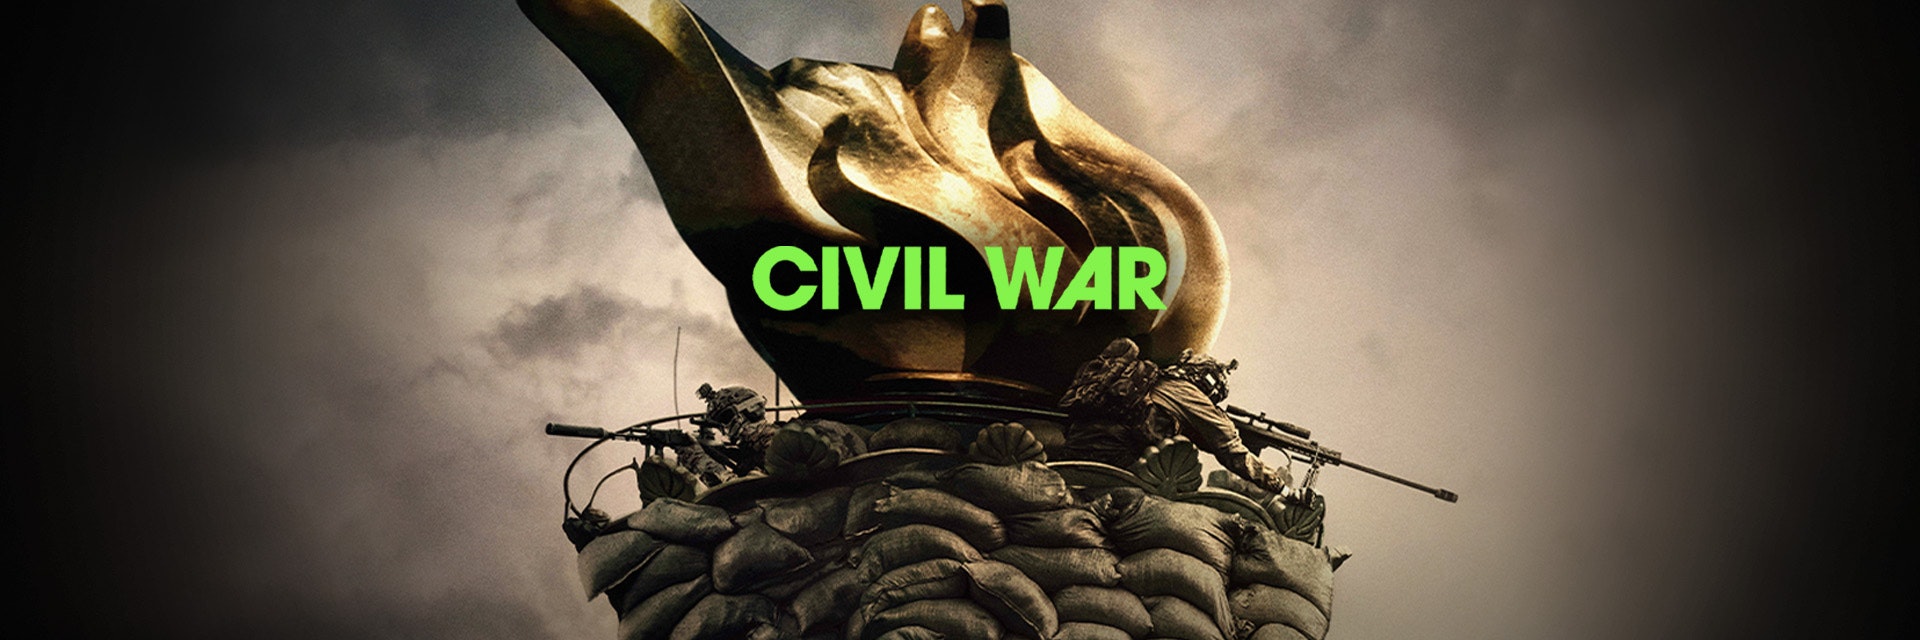 Civil War Web FSL 1920x640